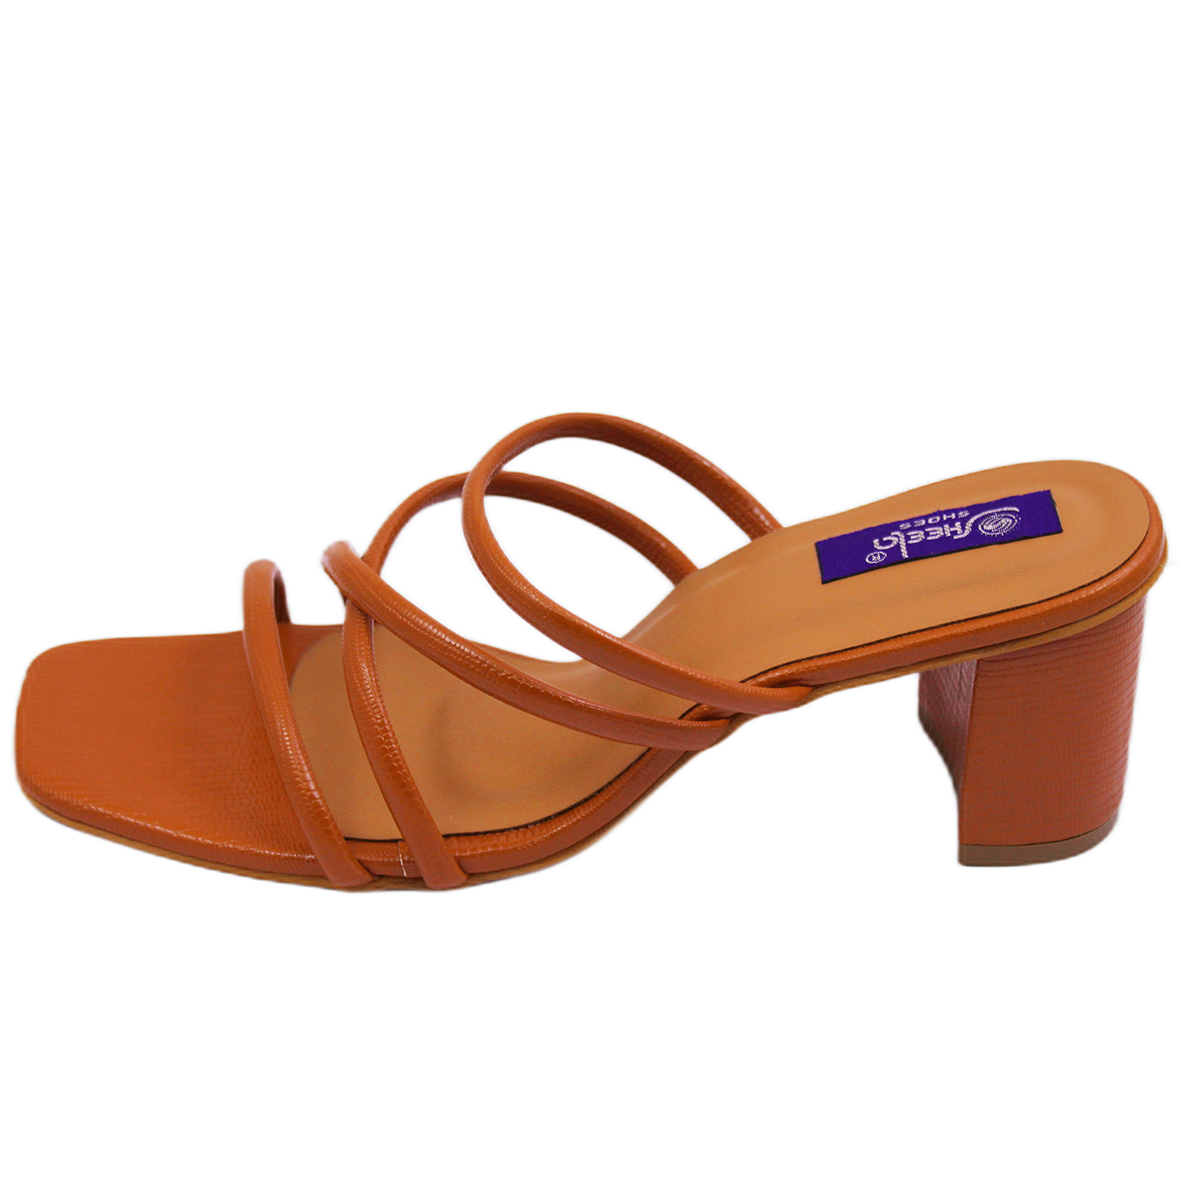 Buy Shoetopia Womens/Girls Tan Solid Block Heels at Amazon.in